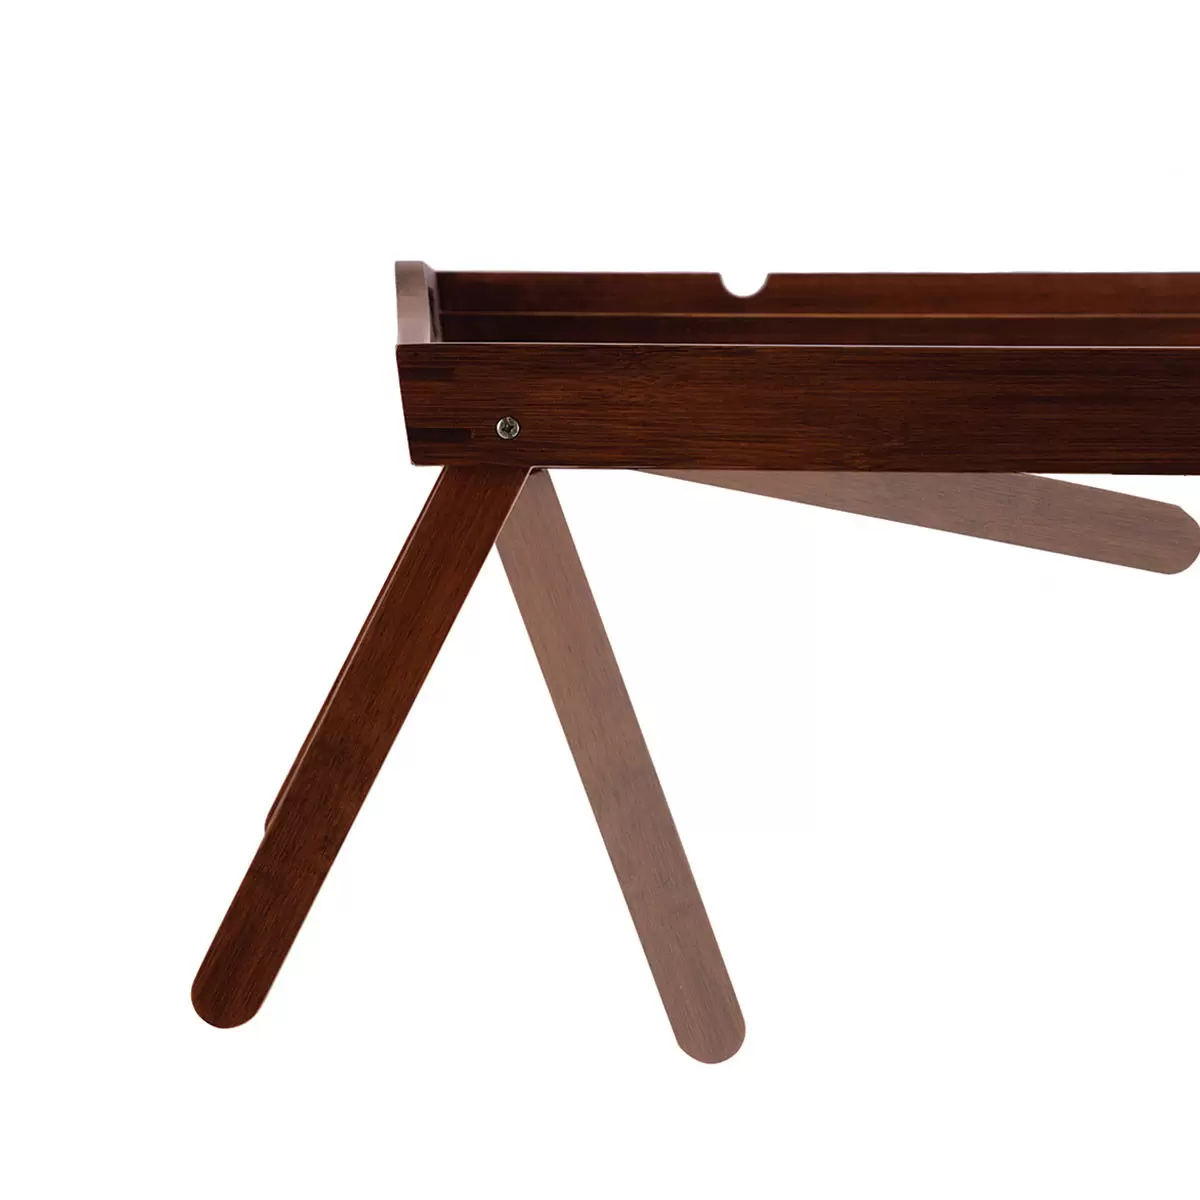 Carrara 多功能摺疊桌/床用桌 深棕色